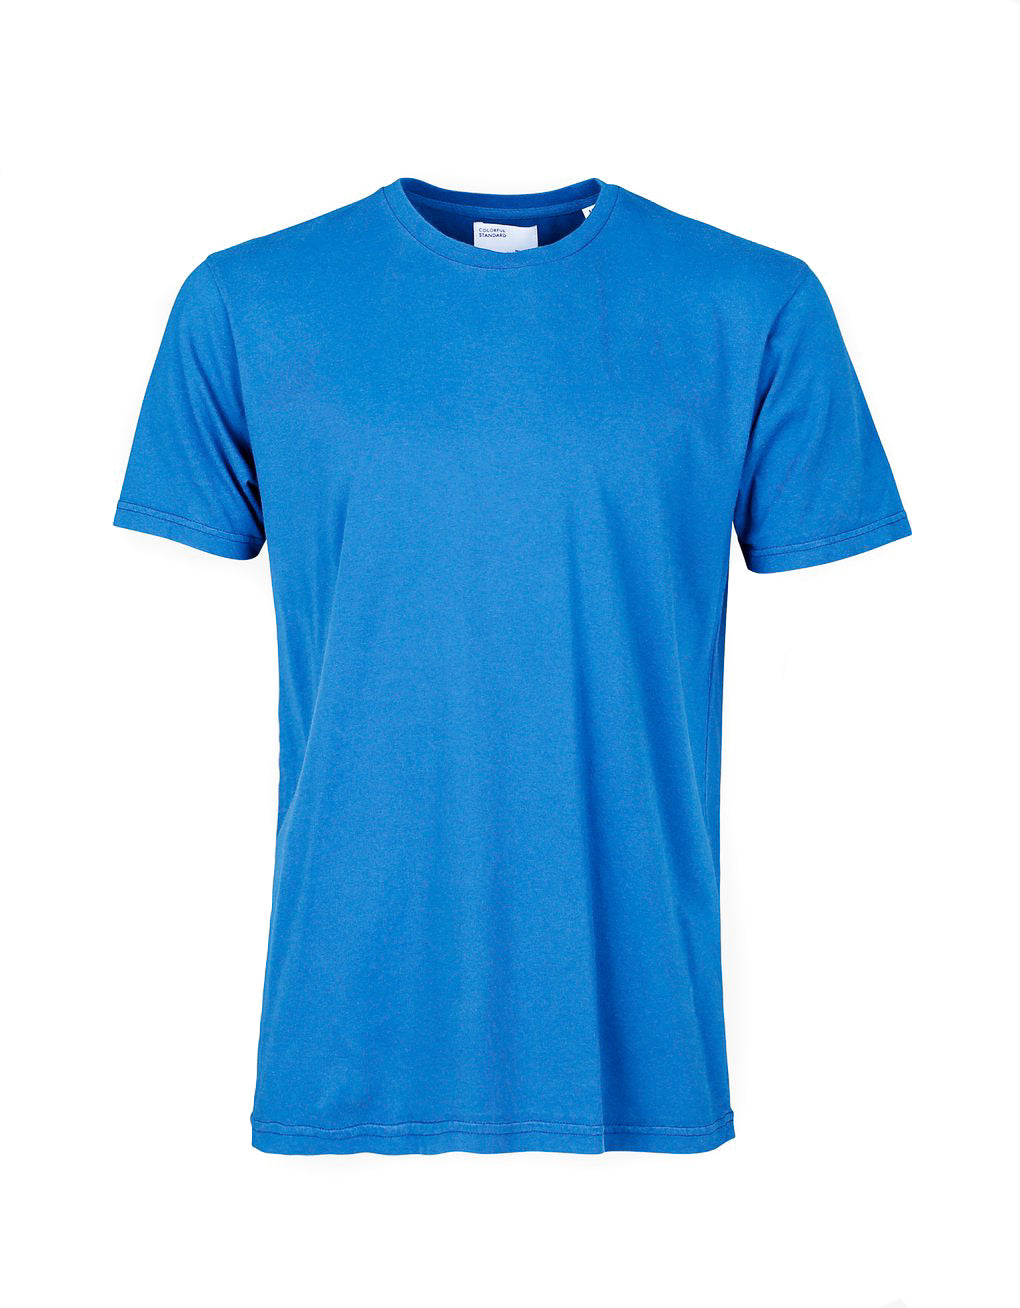 Buntes Standard-klassisches T-Shirt-Pazifikblau